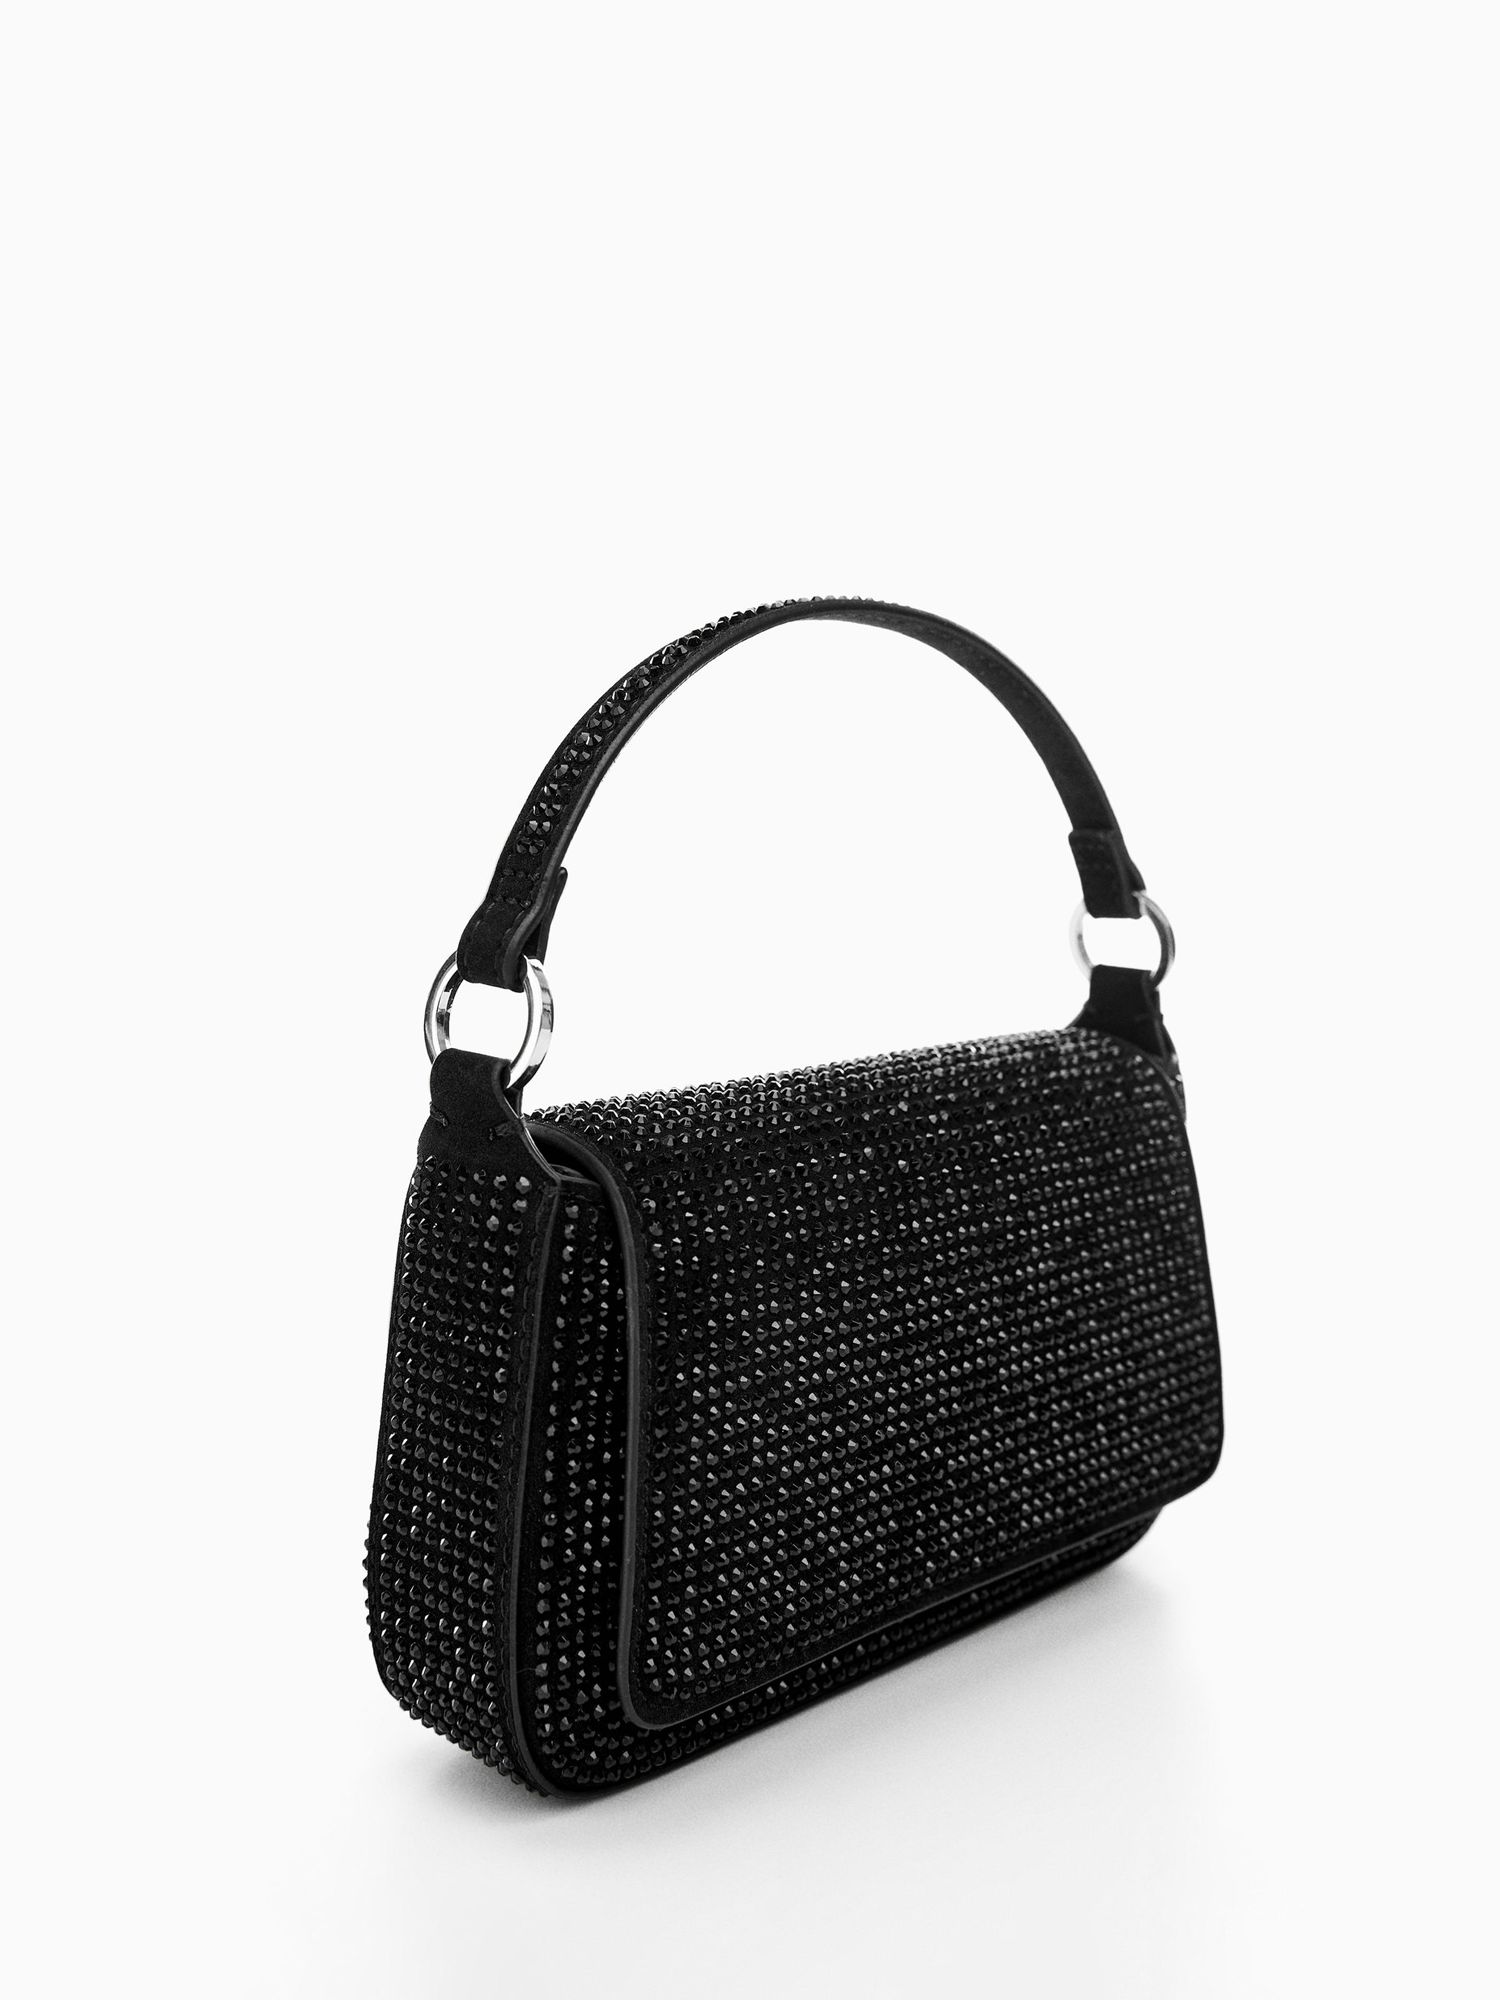 Mango Selina Embellished Handbag, Black at John Lewis & Partners